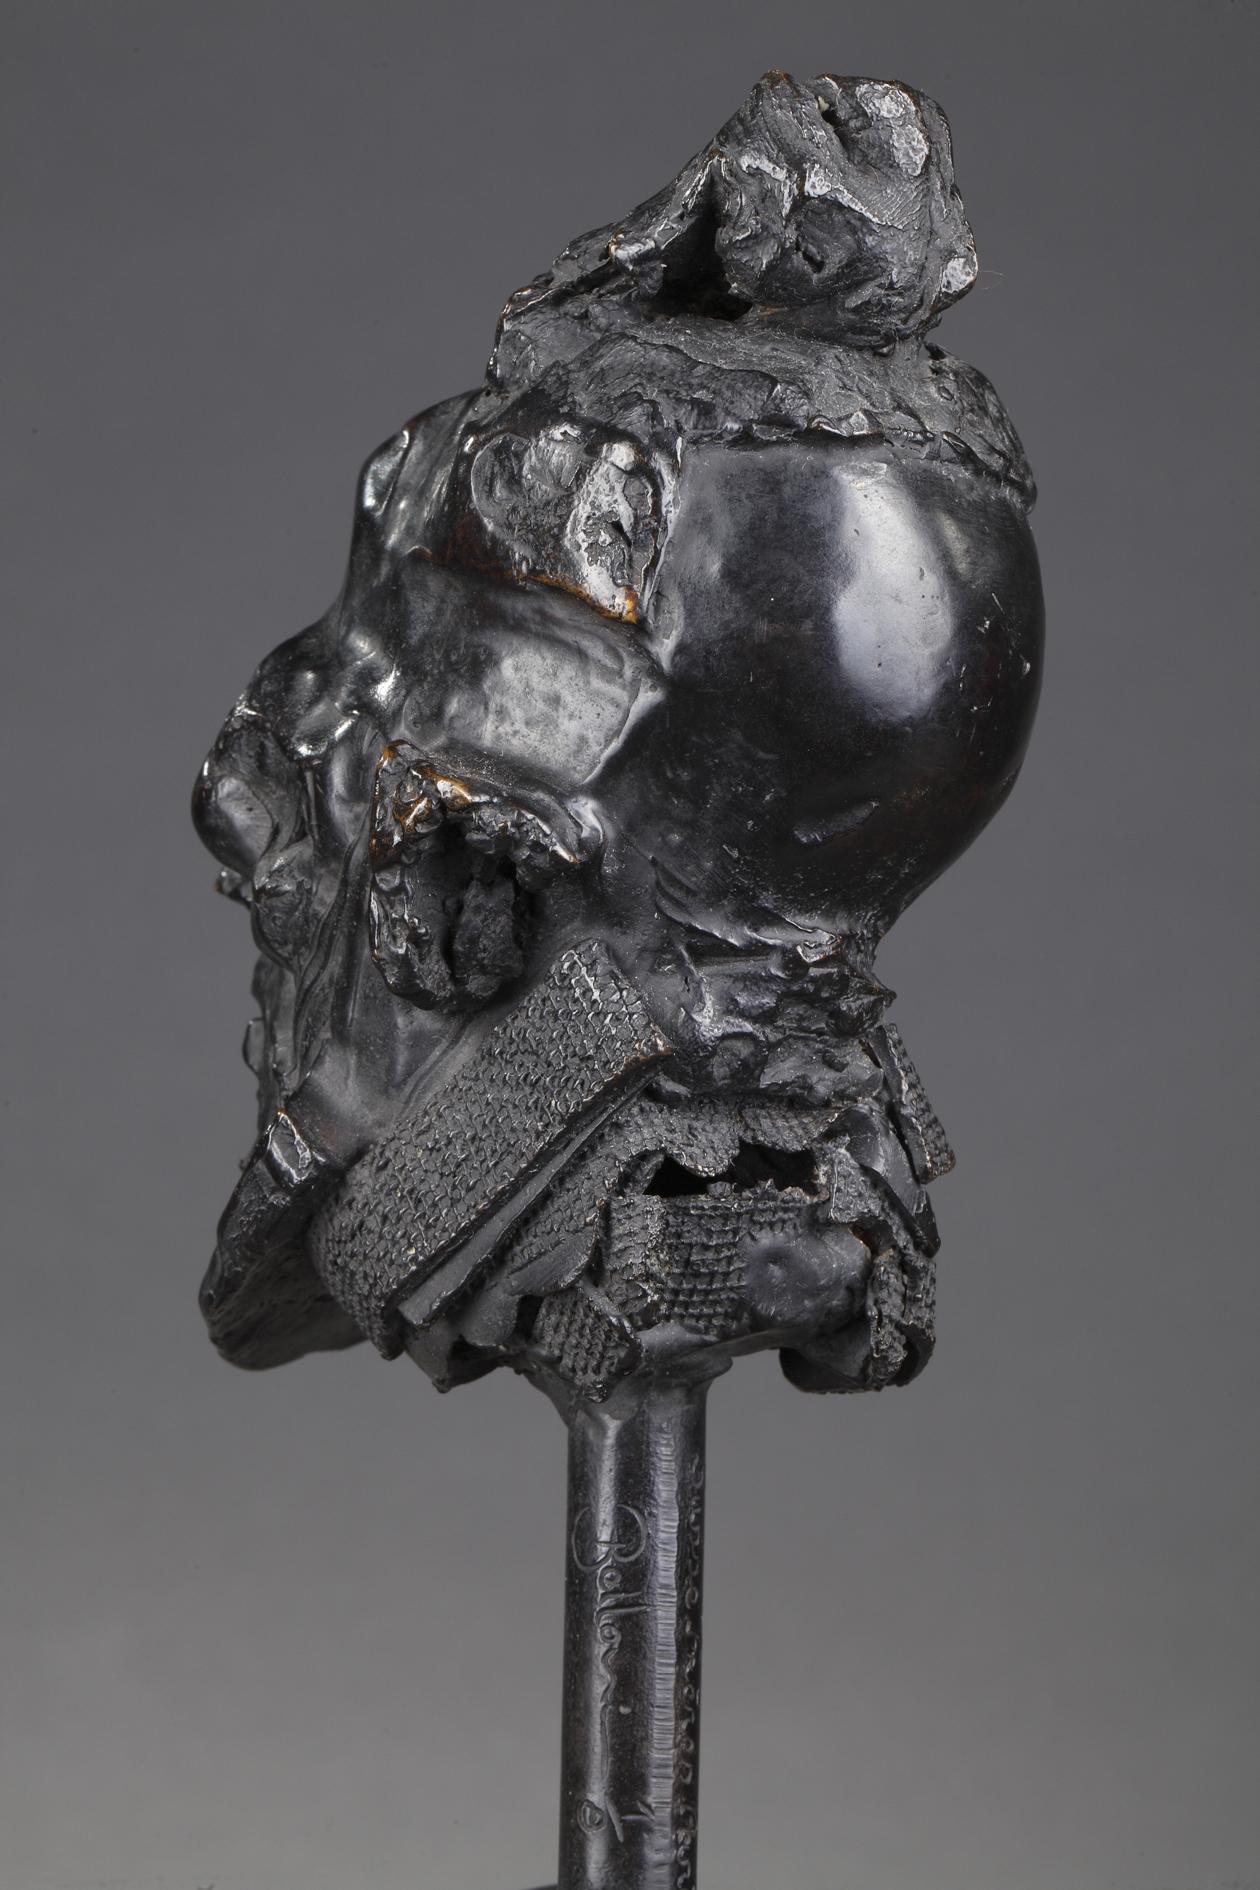 Laurent Belloni (né En 1969)
Man's head
 
Bronze cast with a nuanced black patina
Signed 